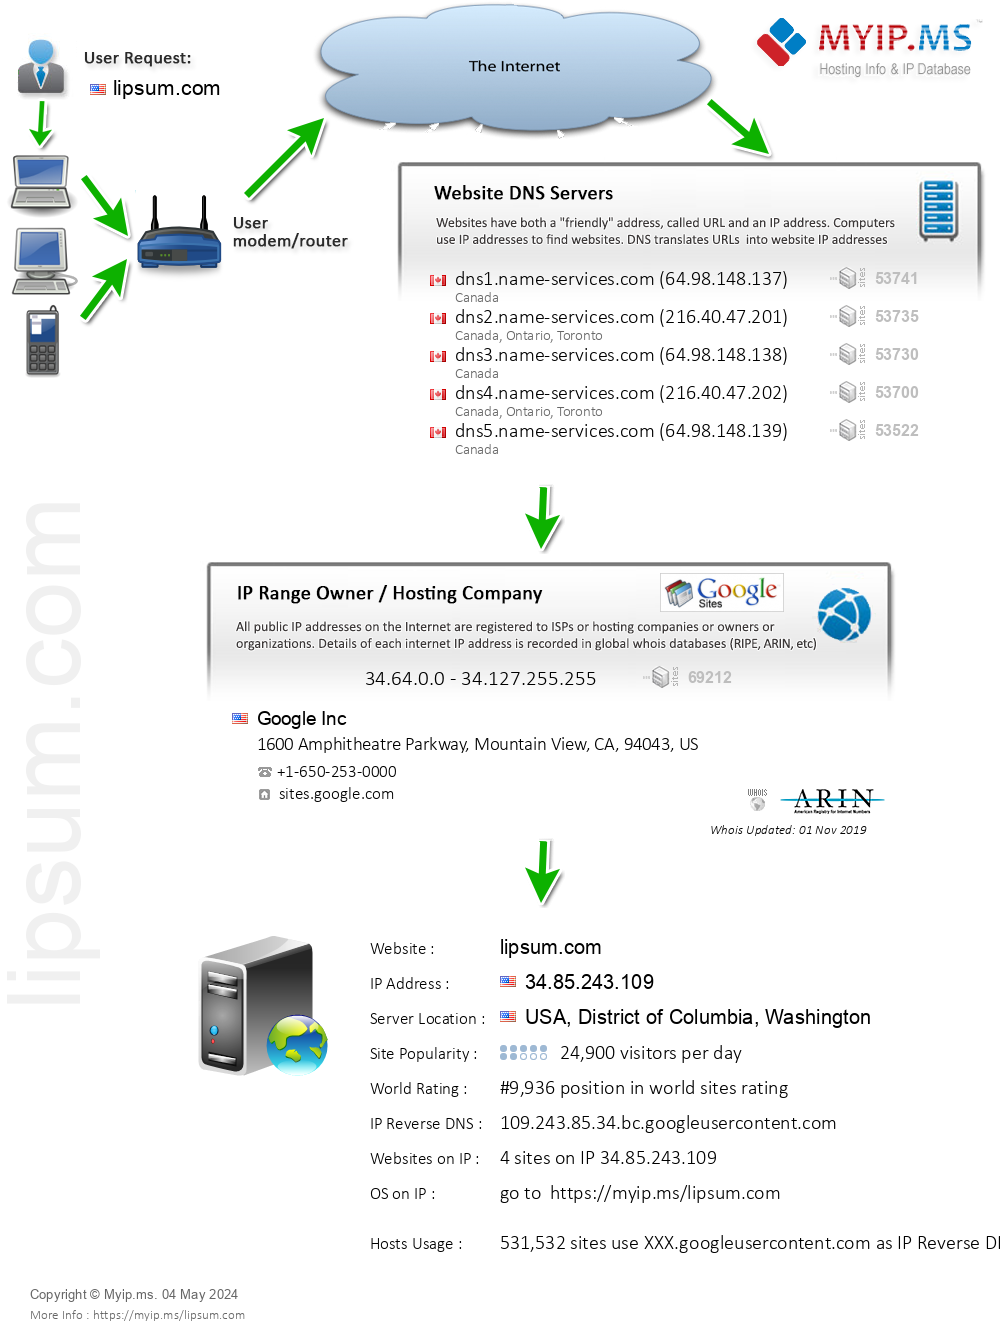 Lipsum.com - Website Hosting Visual IP Diagram